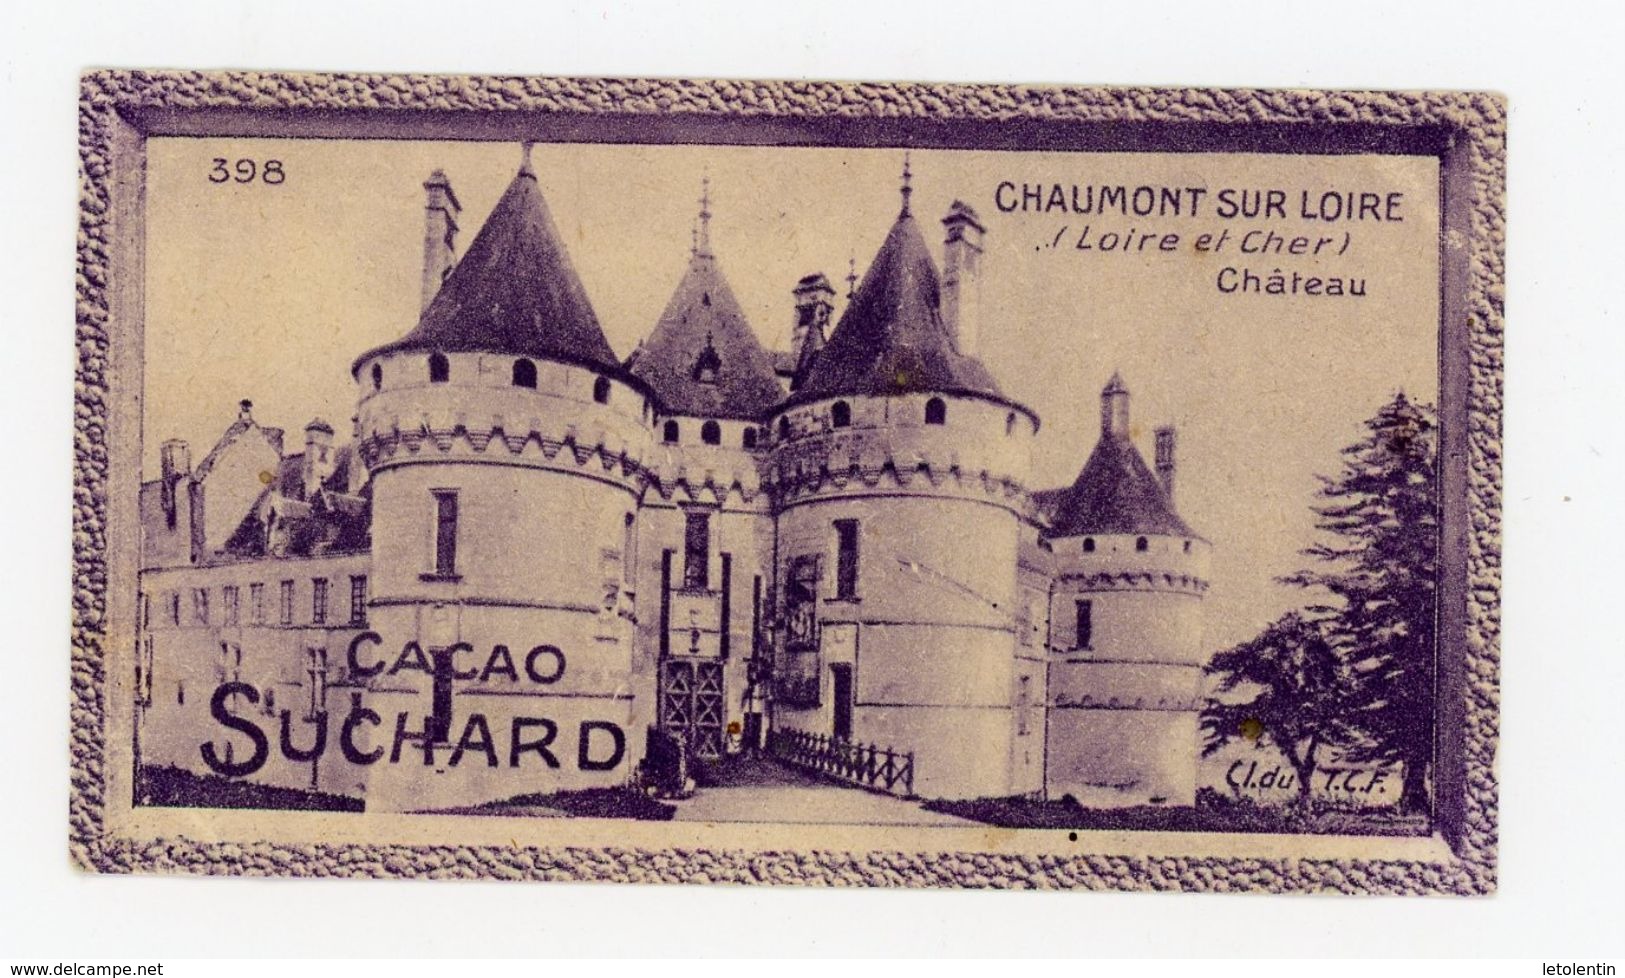 CHOCOLAT SUCHARD - VUES DE FRANCE - 398 - CHAUMONT SUR LOIRE, LE CHATEAU (LOIRE & CHER) - Suchard